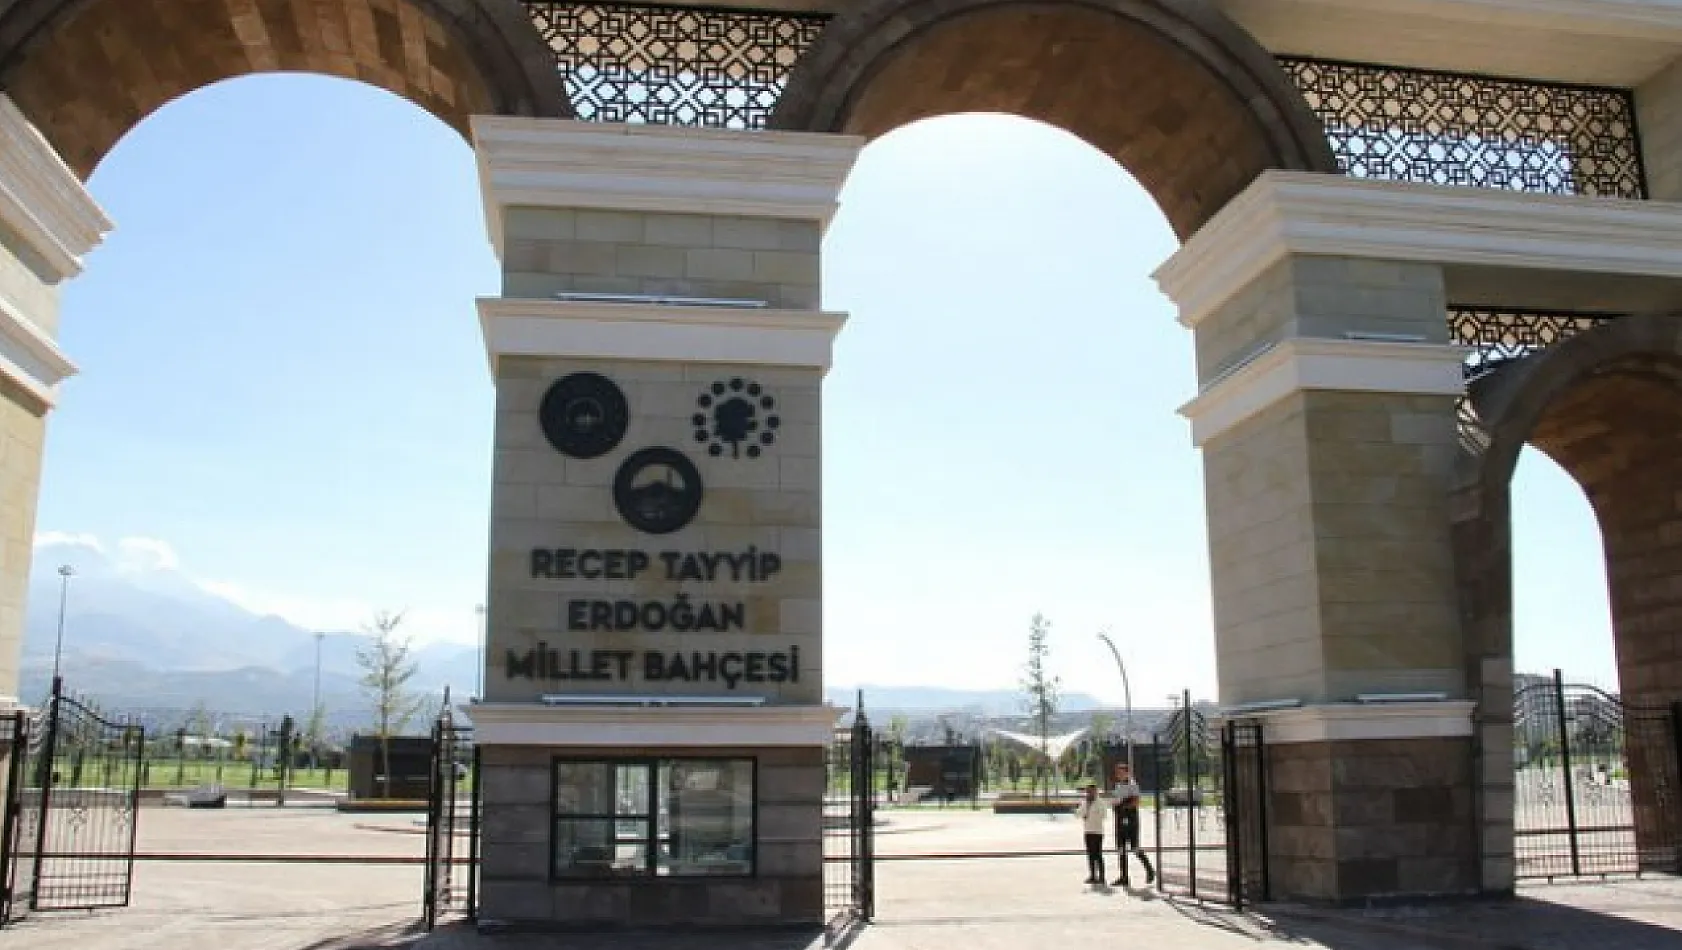 Türkiye'nin en büyük millet bahçesinde bakın ne düzenlenecek